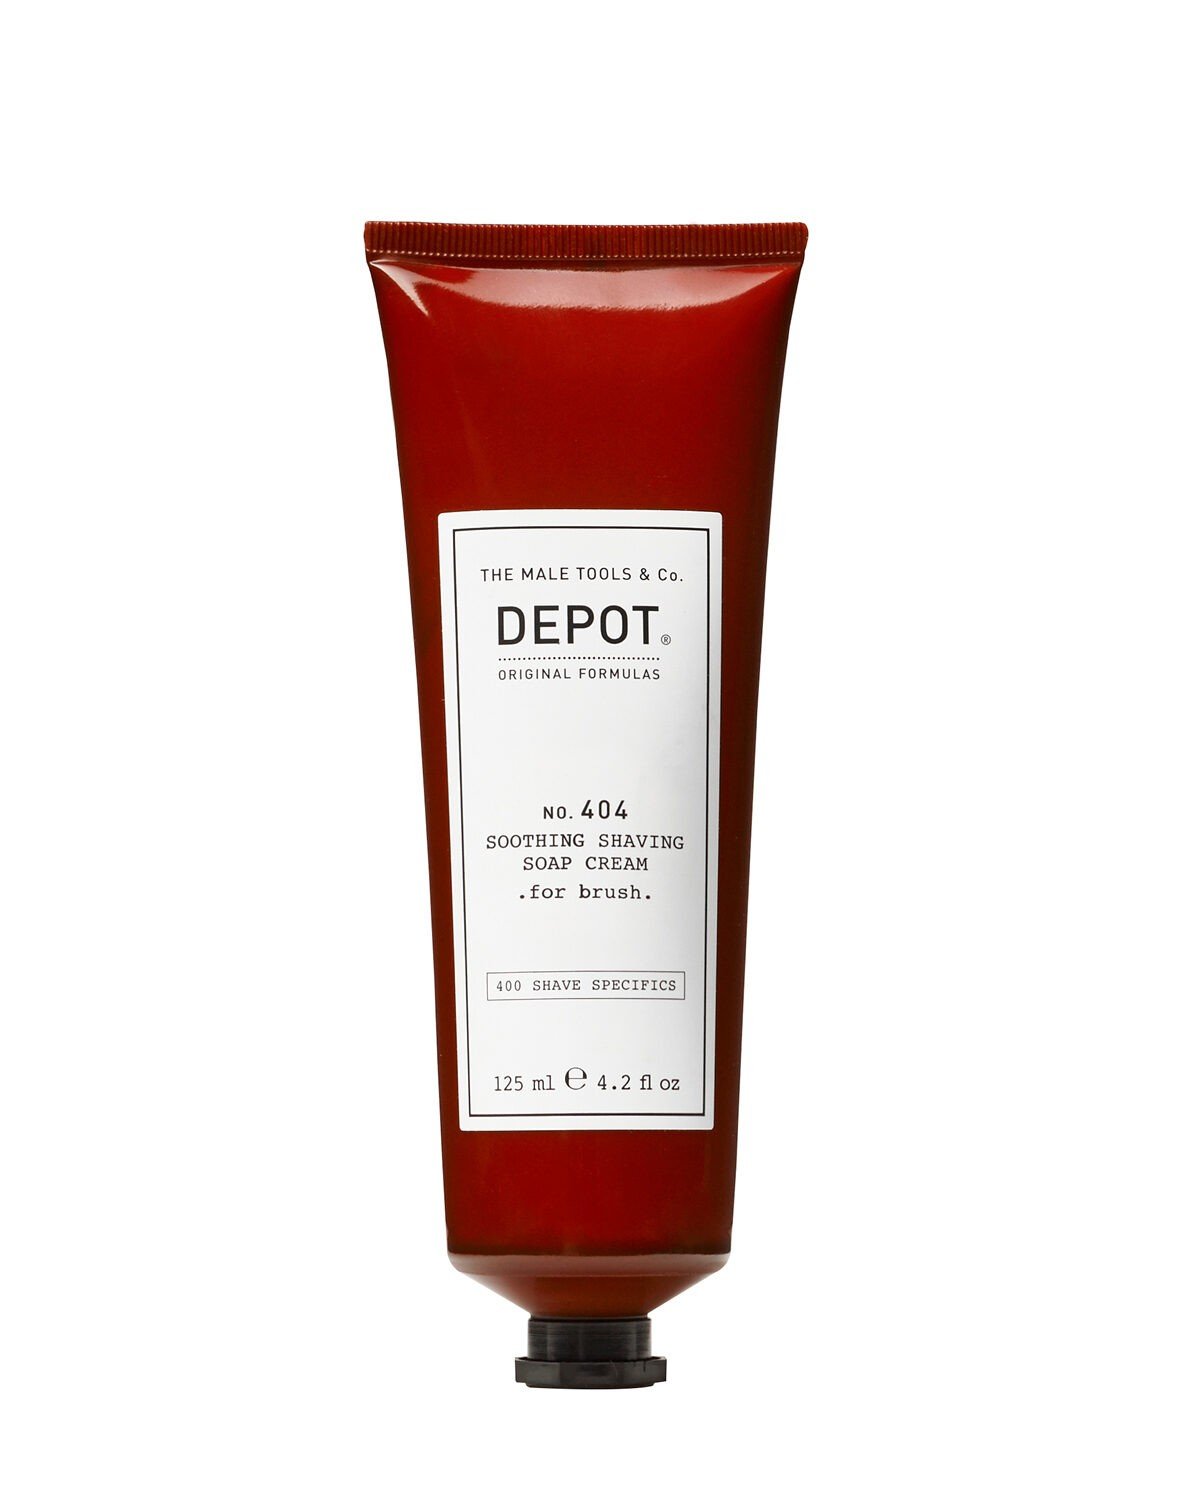 DEPOT 404 Soothing Shaving Soap Cream - for brush